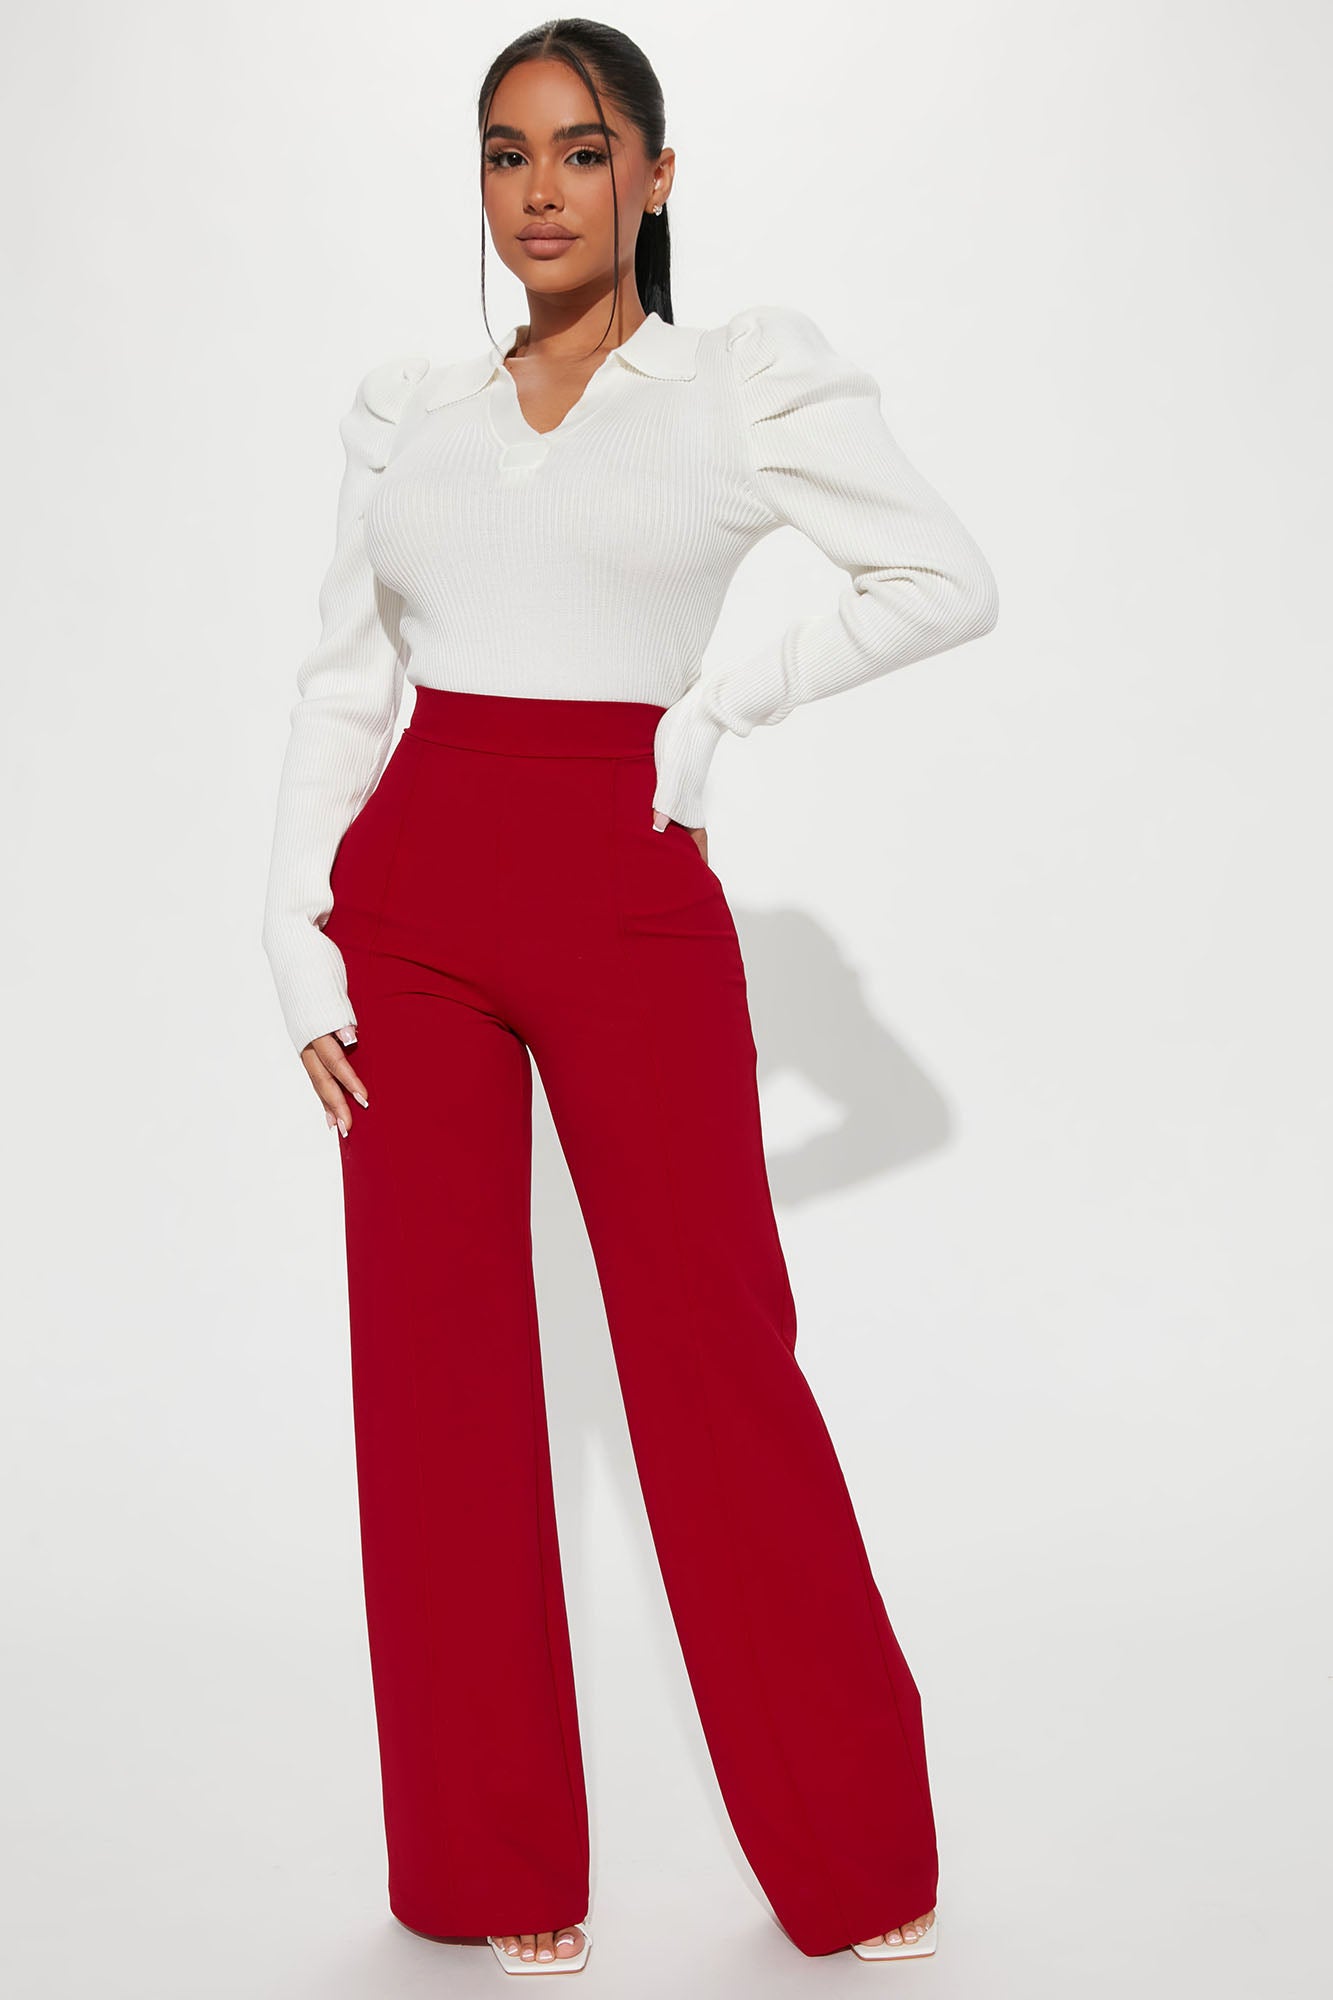 Petite Victoria High Waisted Dress Pants - Red, Fashion Nova,  Career/Office